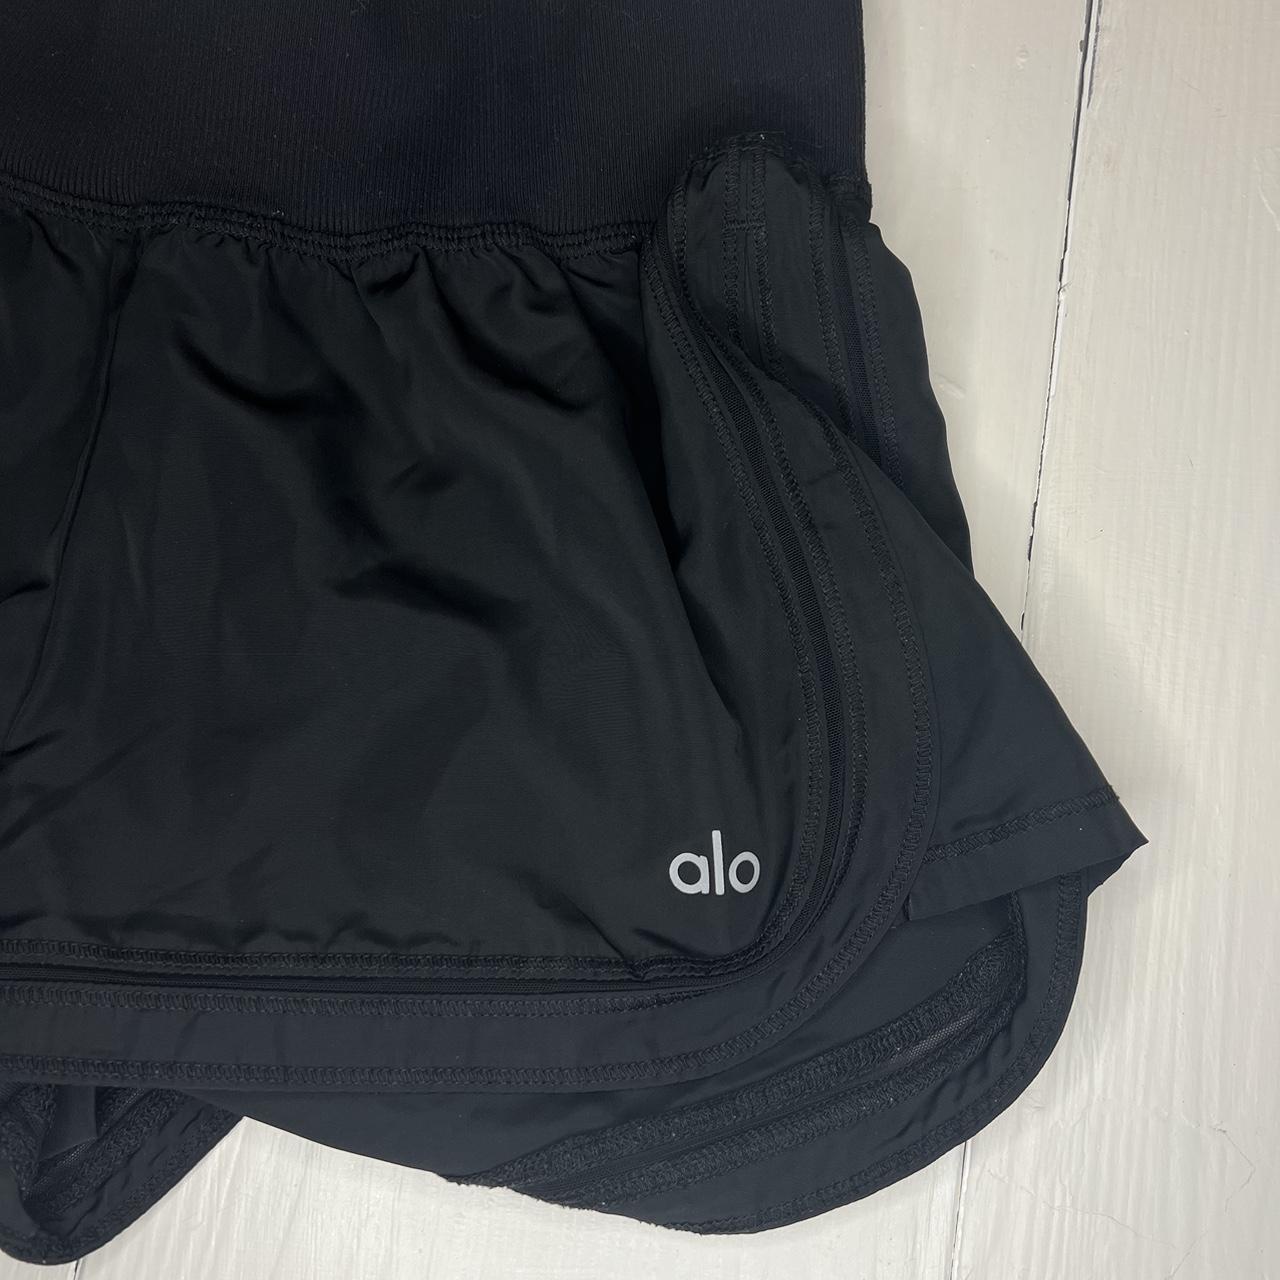 Alo yoga black shorts size xs based on my... - Depop